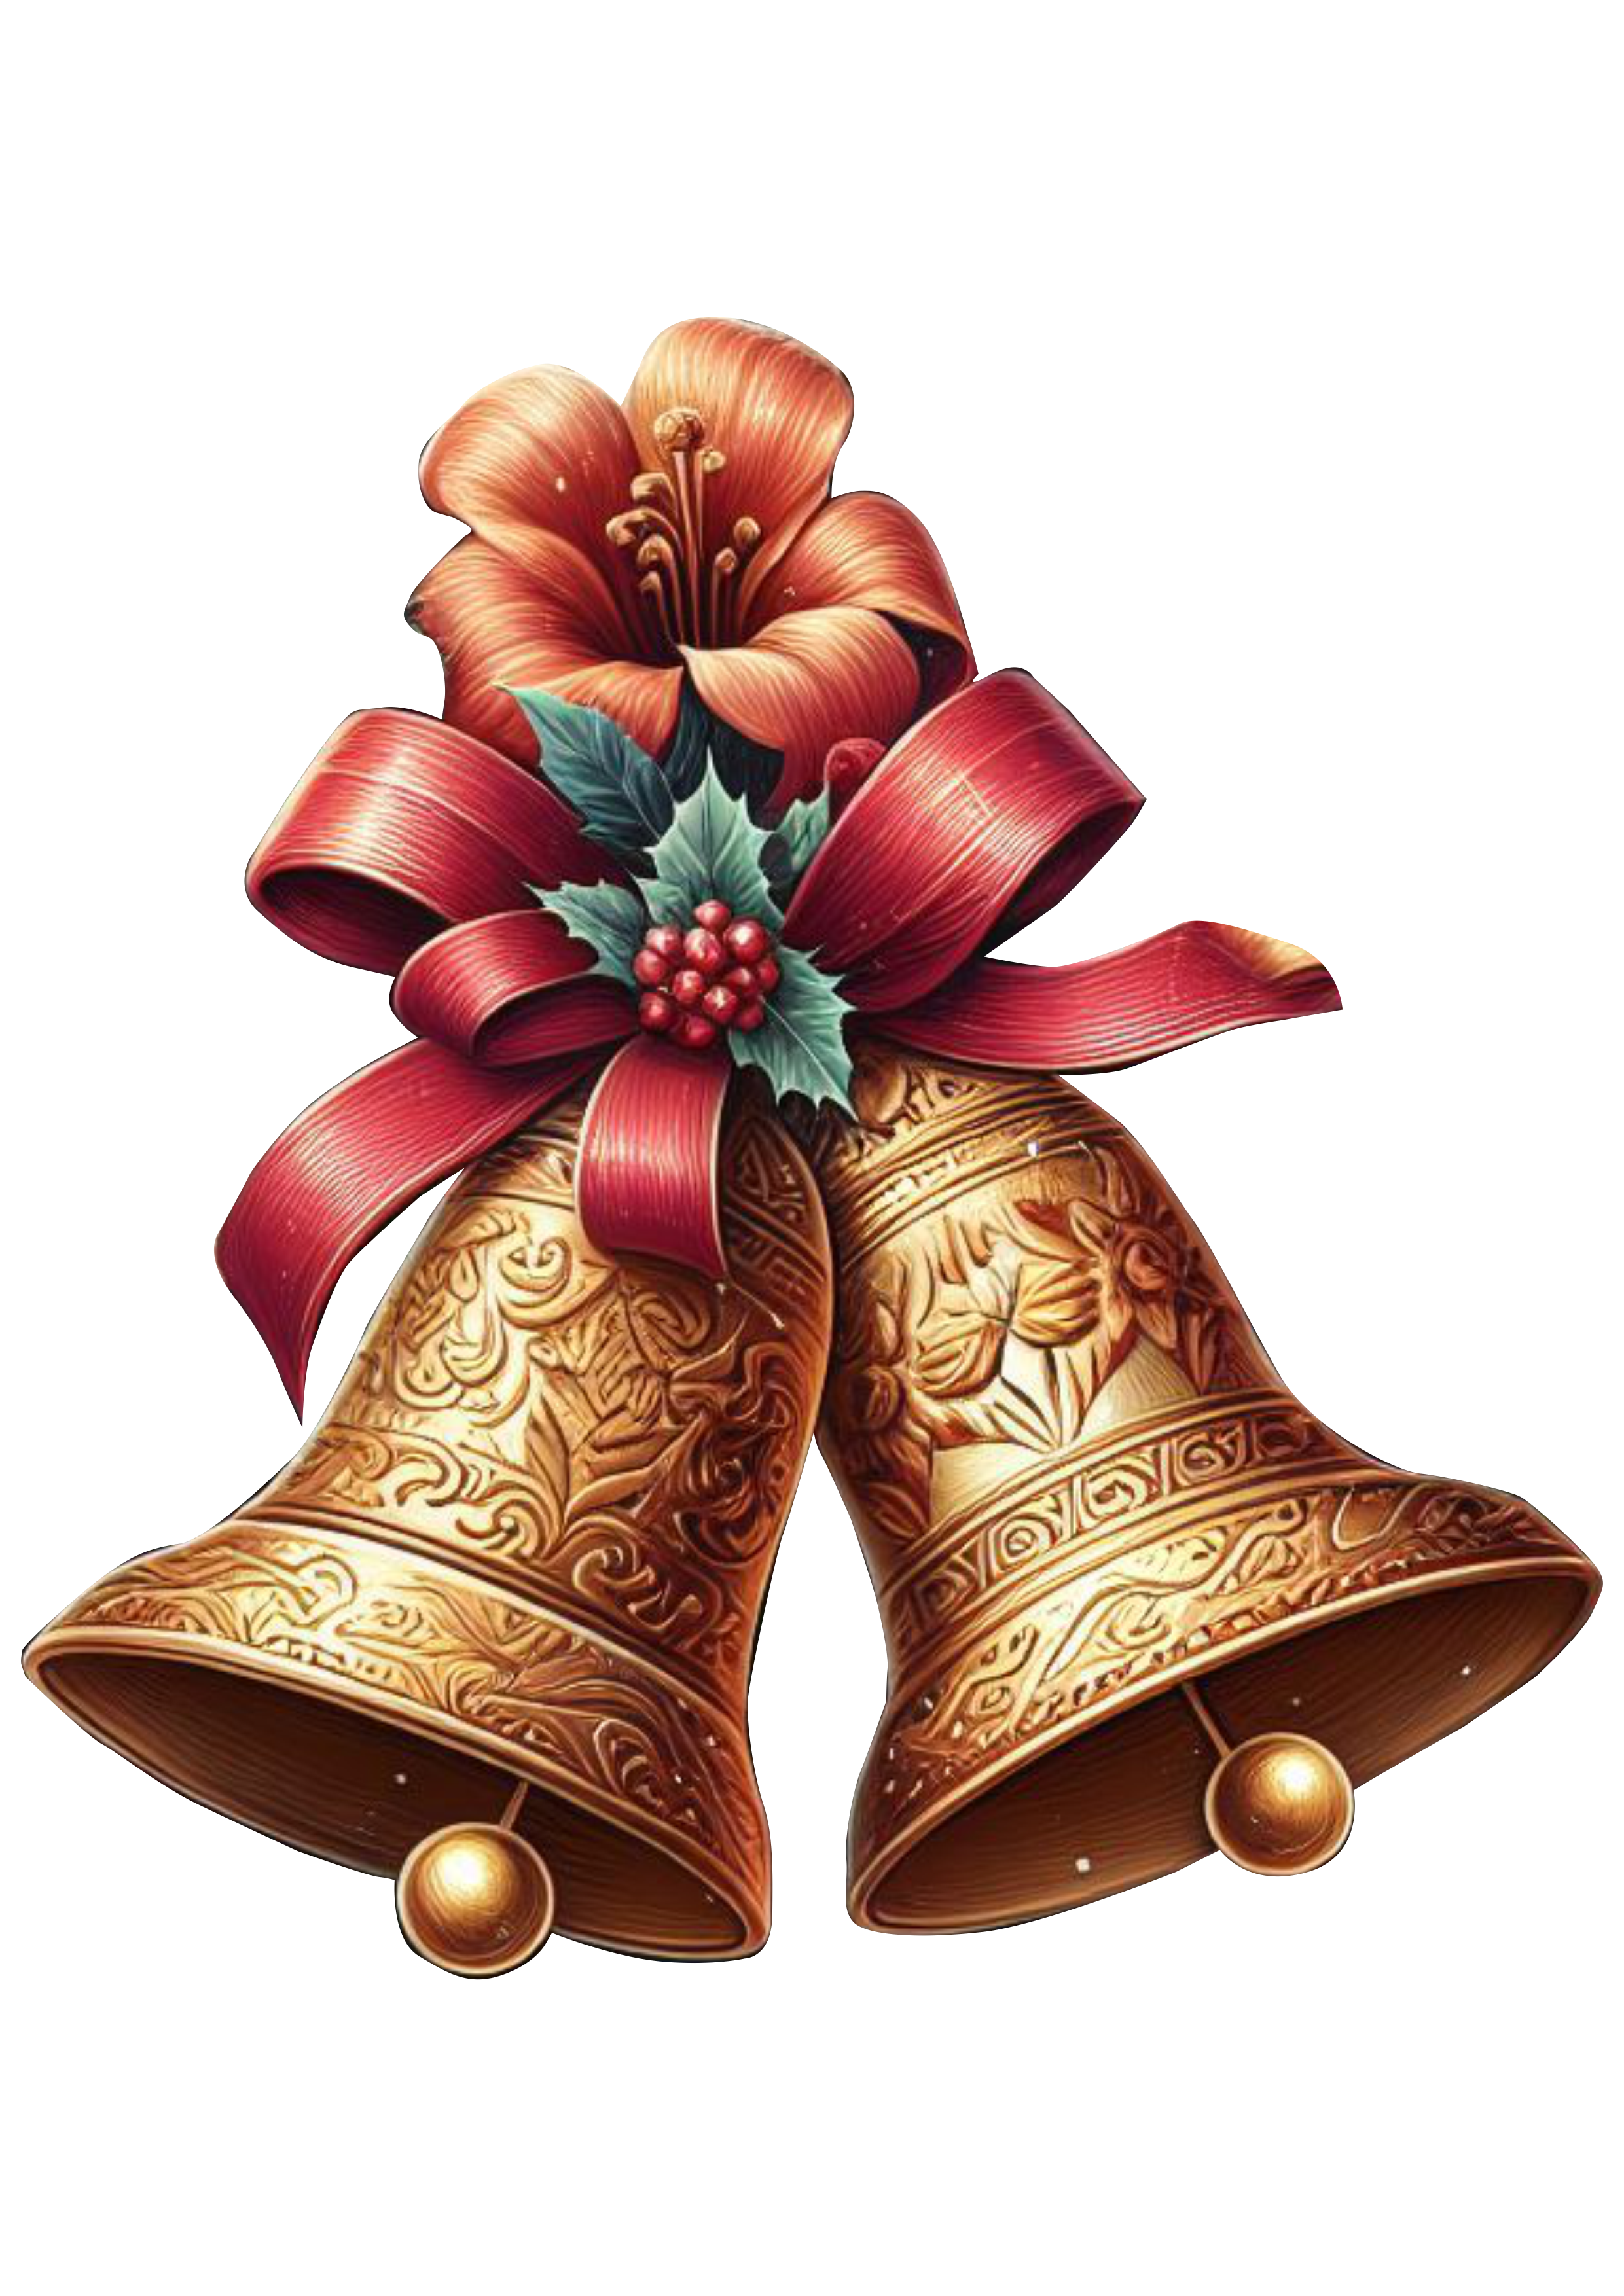 Sinos dourados de natal jingle bell decorado com laços e flores realista png